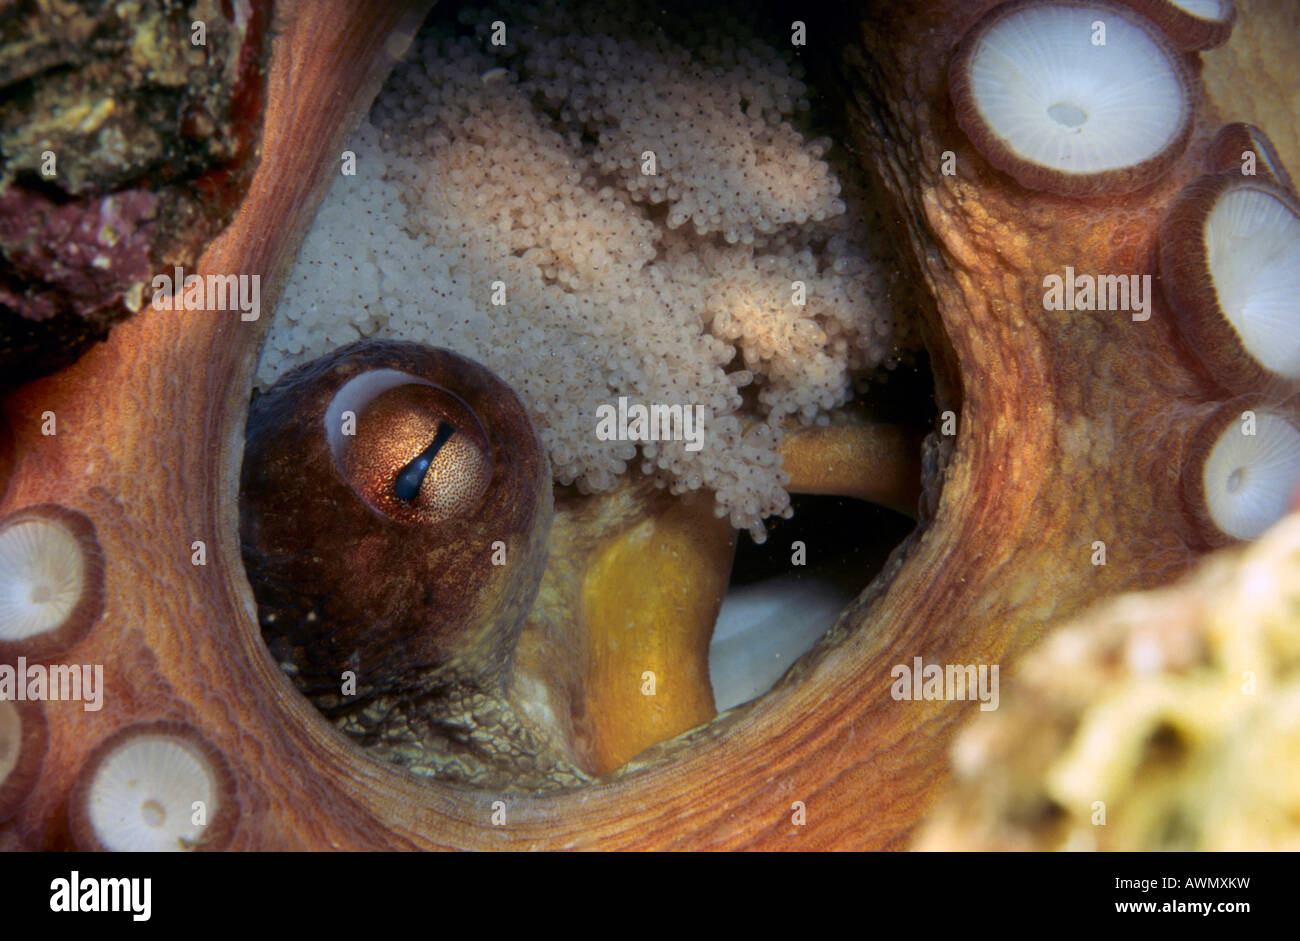 Poulpe commun (Octopus vulgaris) avec des oeufs, Mer Méditerranée Banque D'Images